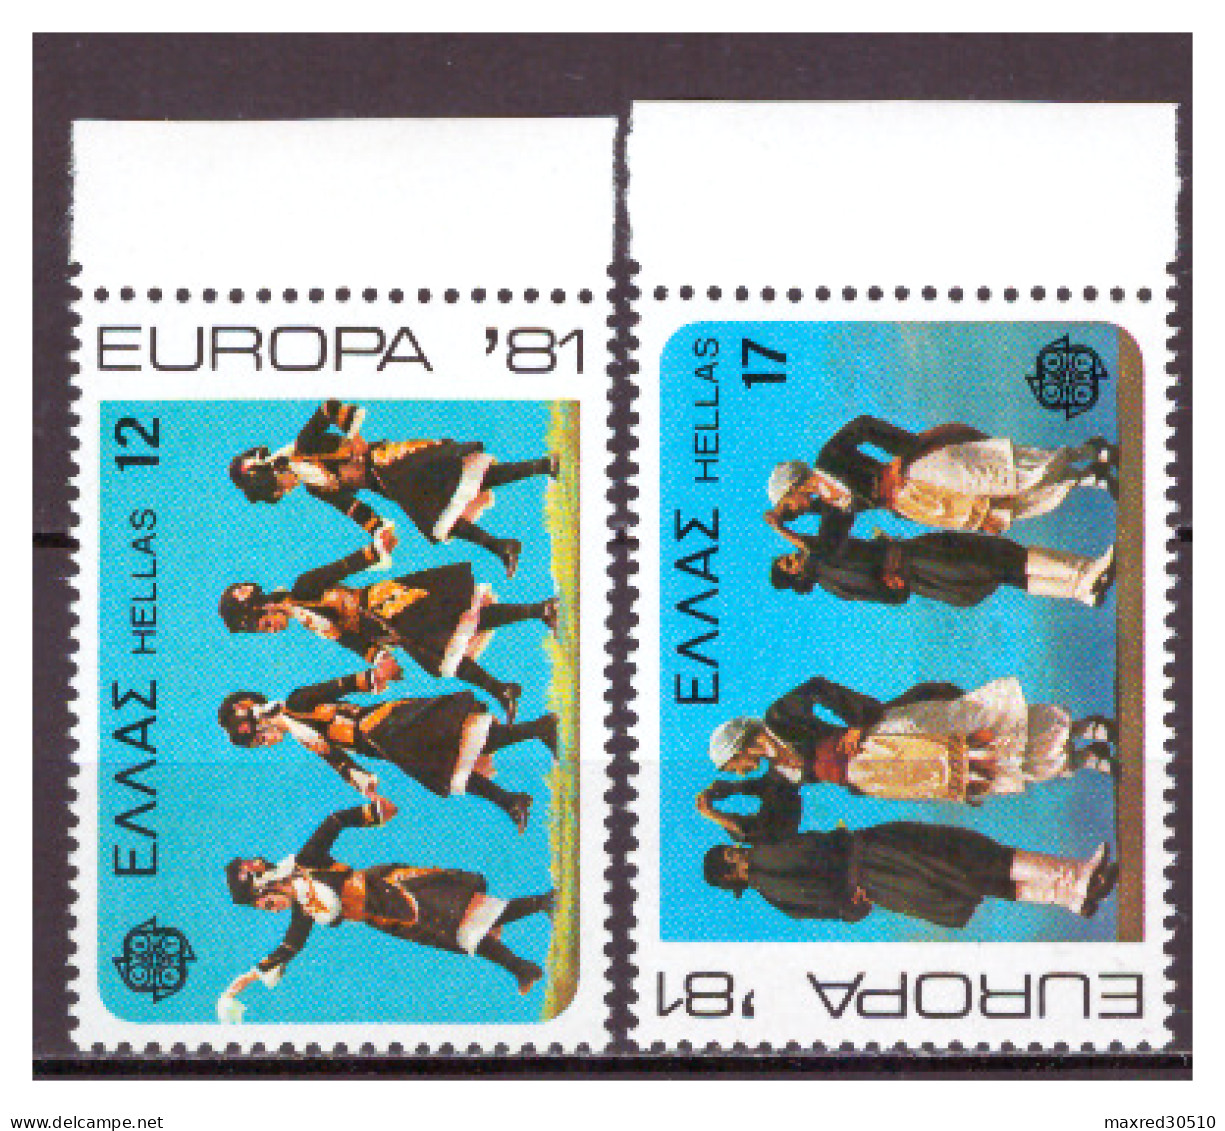 GREECE 1981 SET "EUROPA CEPT 1981 - TRADITIONAL DANCES" MNH  V-F - Ongebruikt